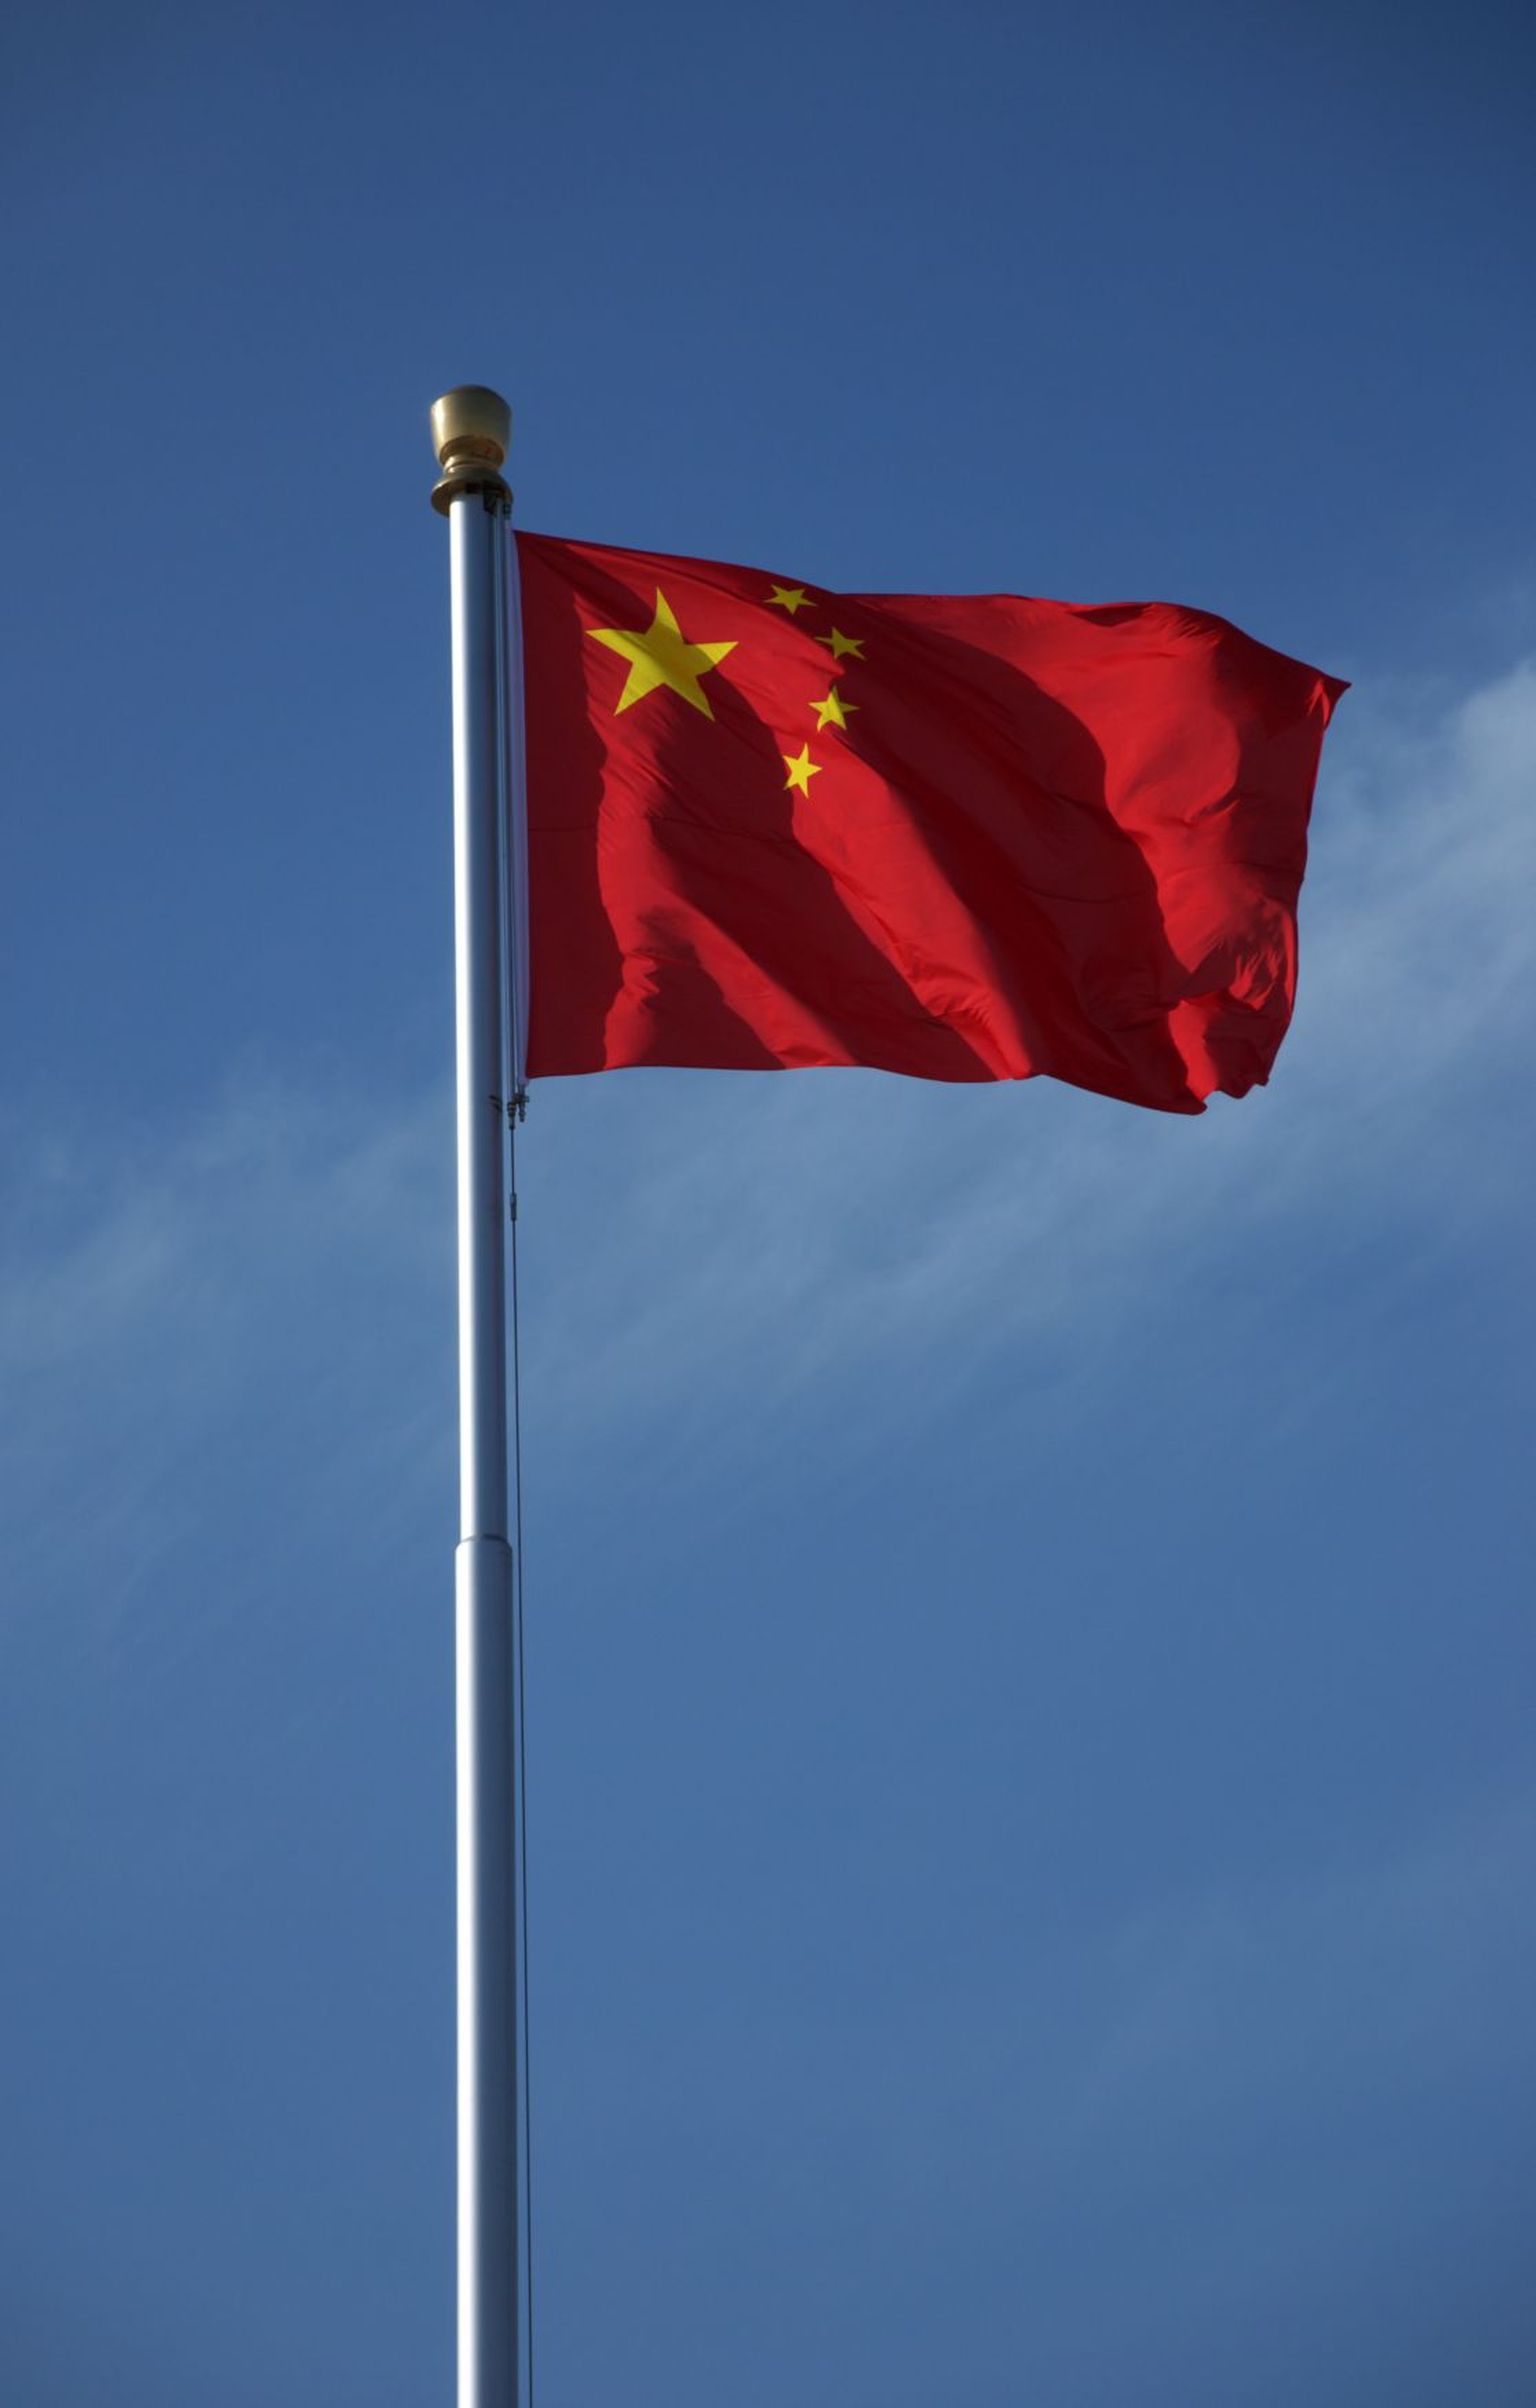 Hiina Rahvavabariigi lipp.